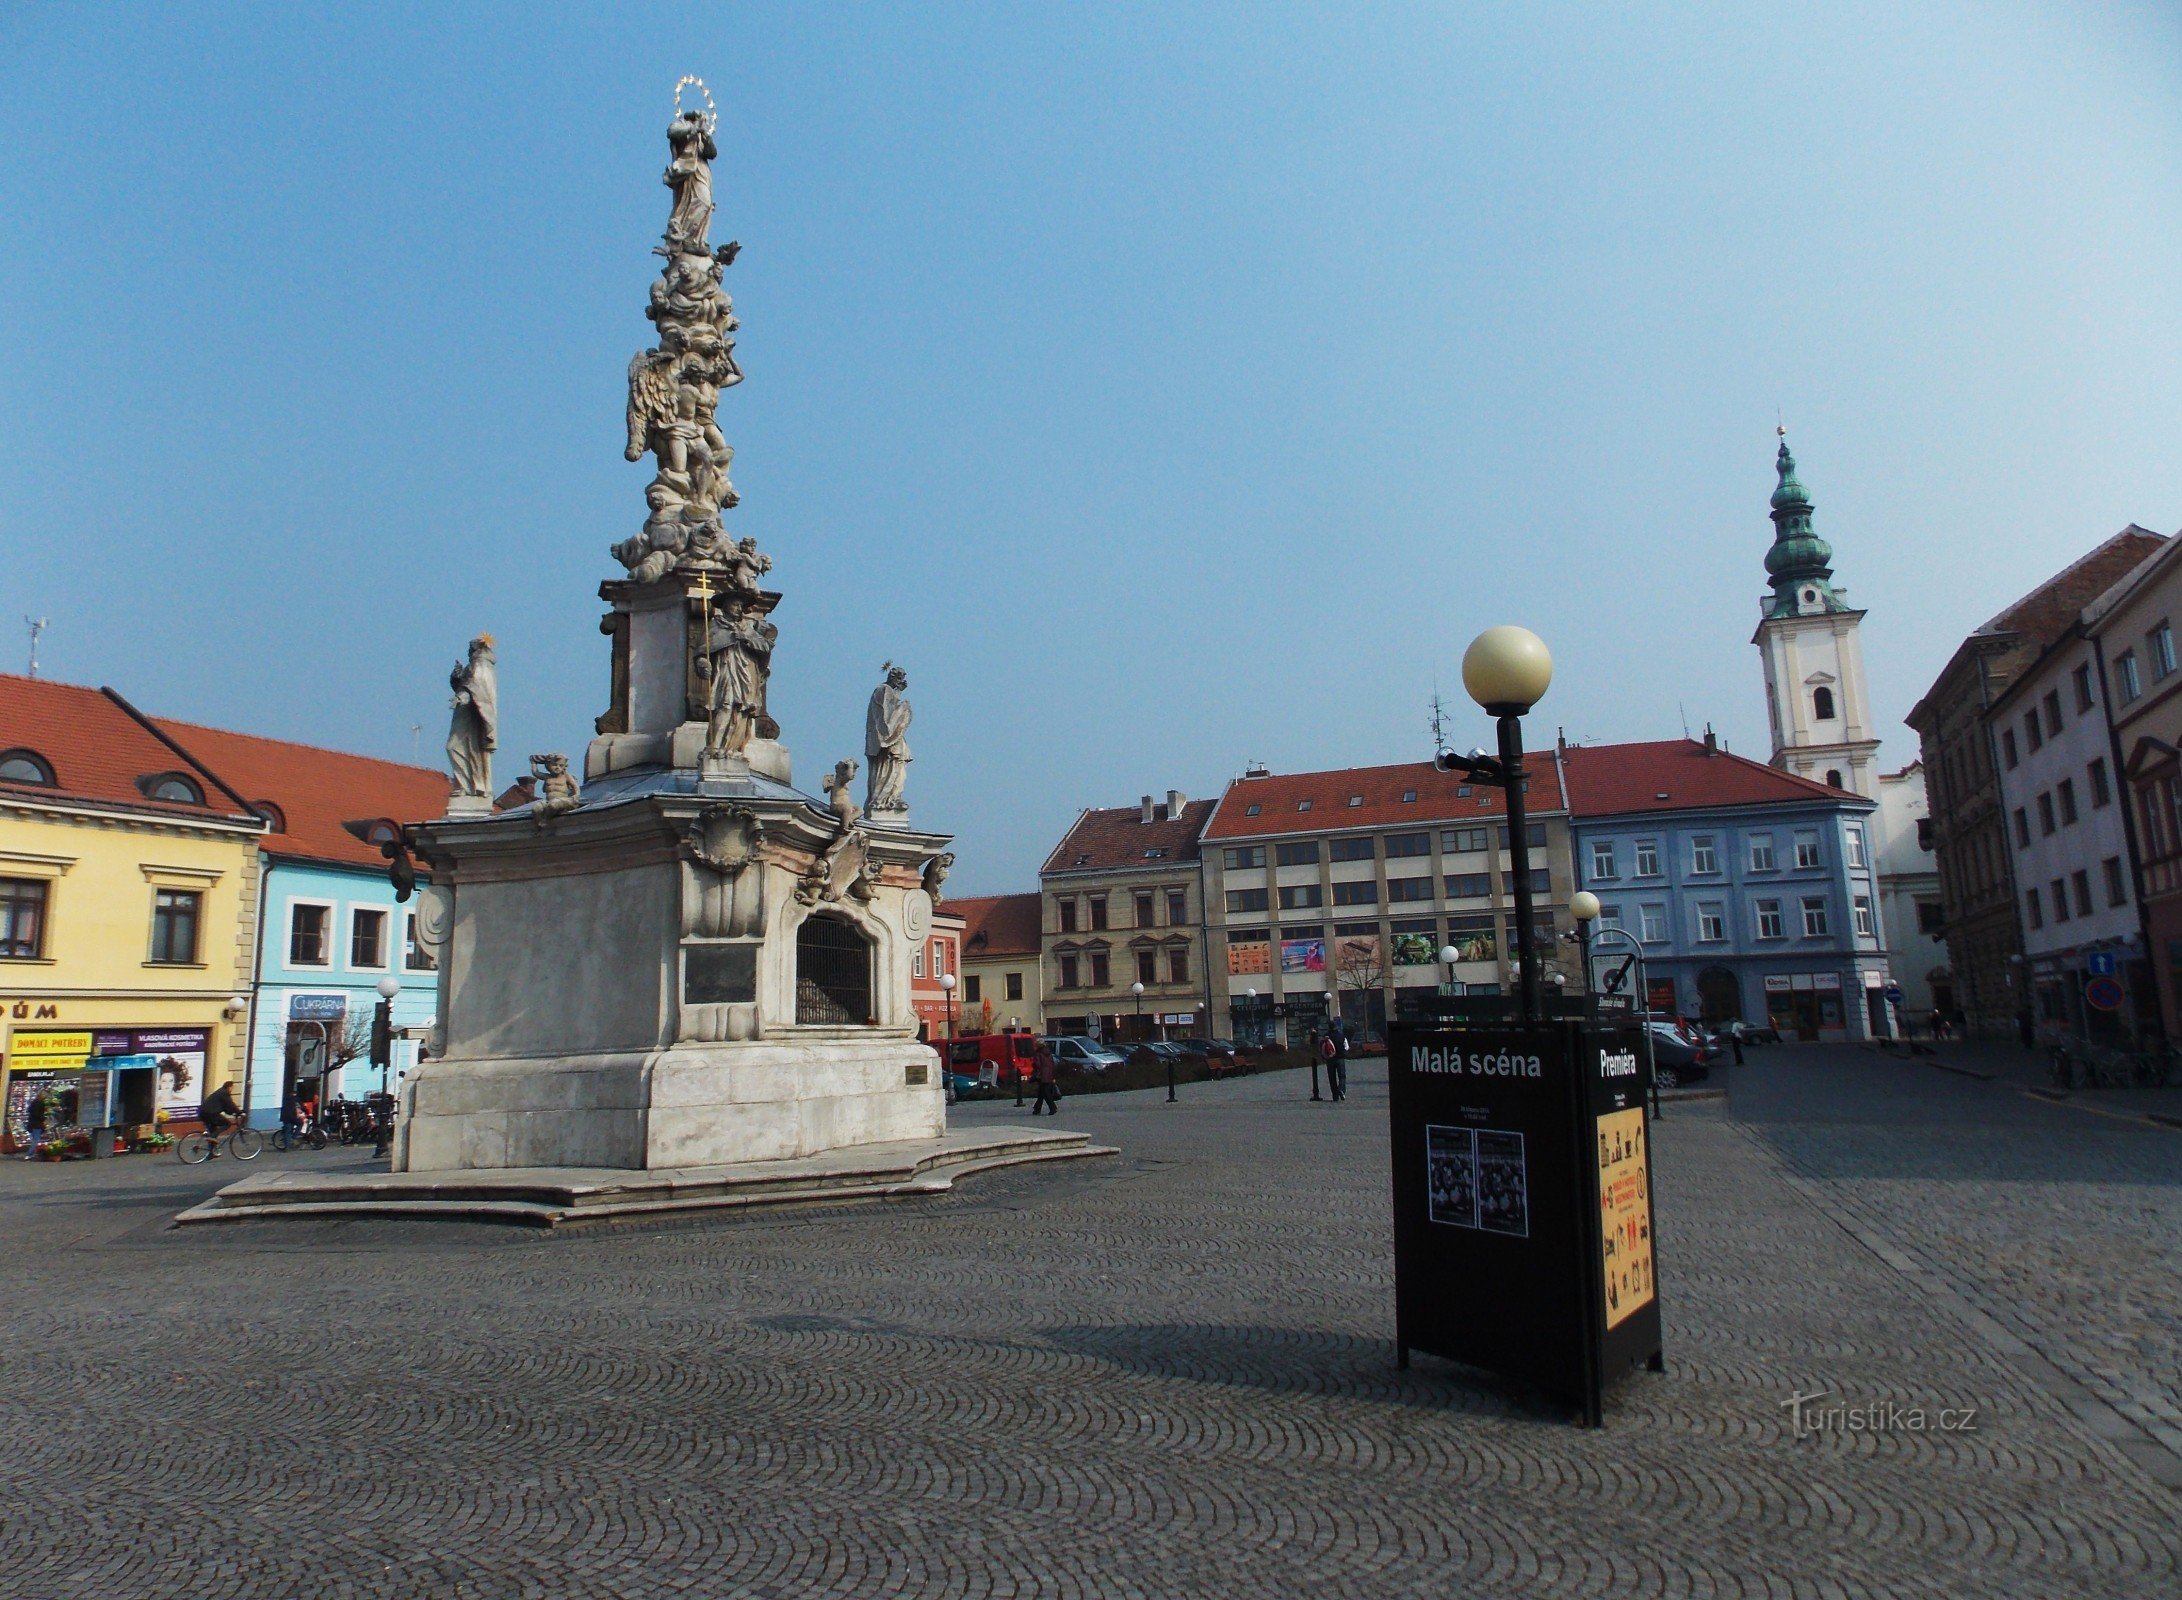 Across Mariánské náměstí in Uherské Hradiště